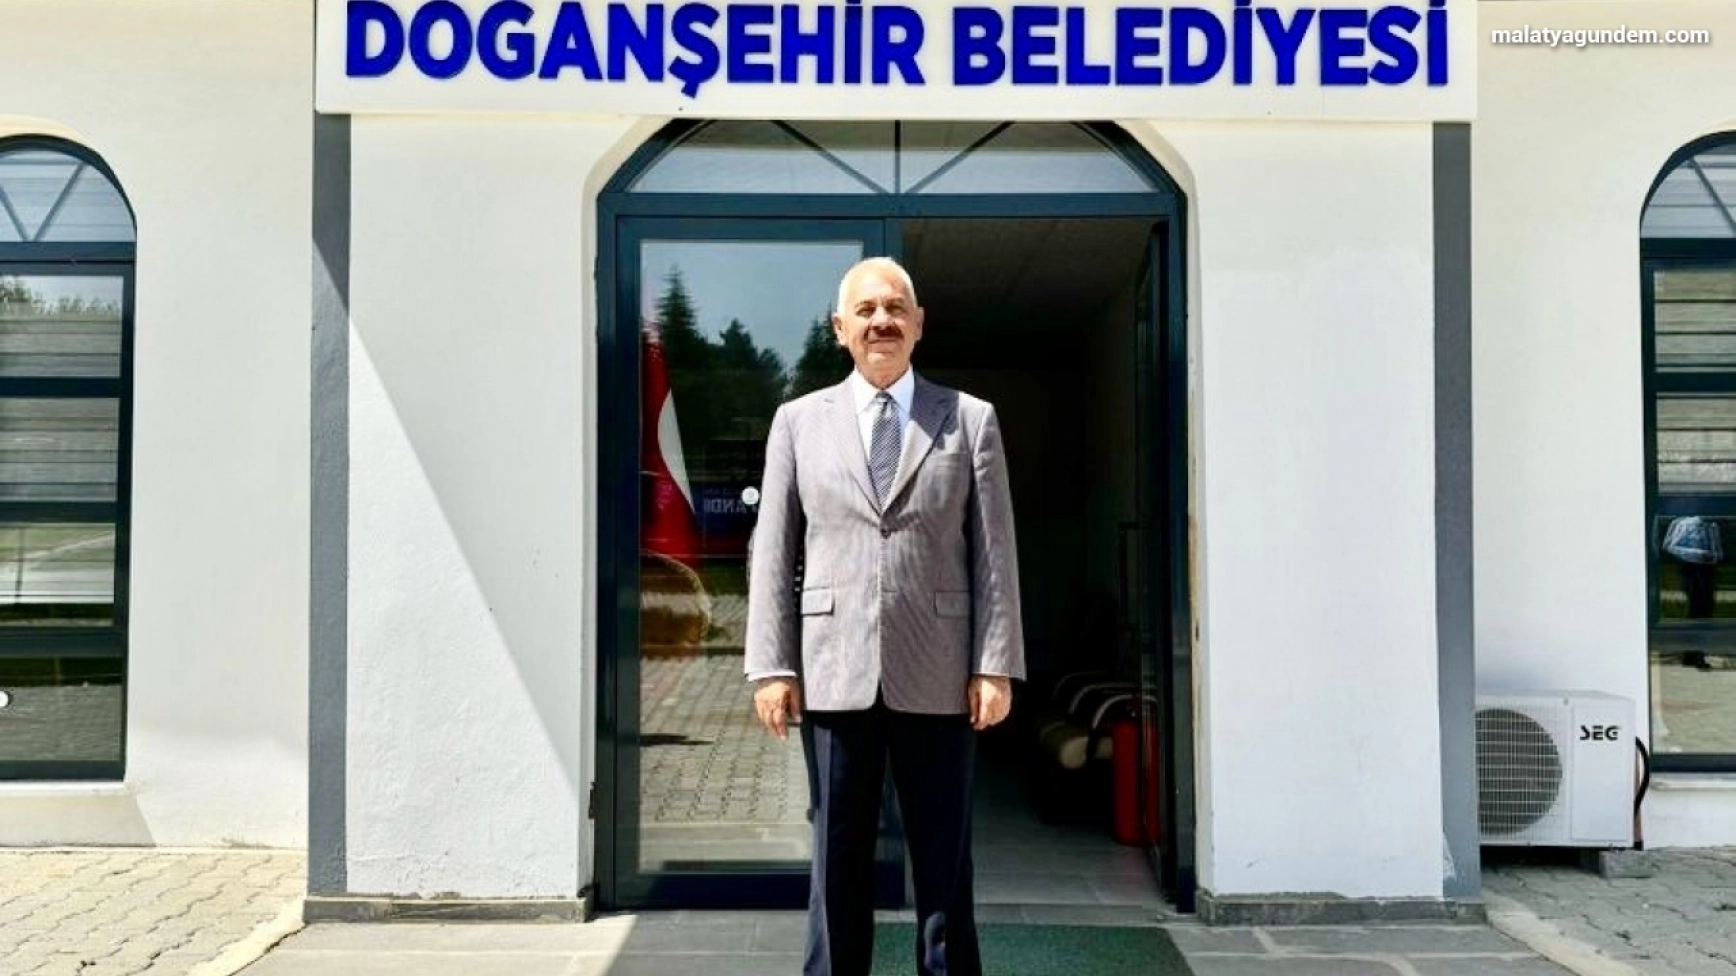 Başkan Bayram, Doğanşehir Belediyesi'nin borcunu açıkladı